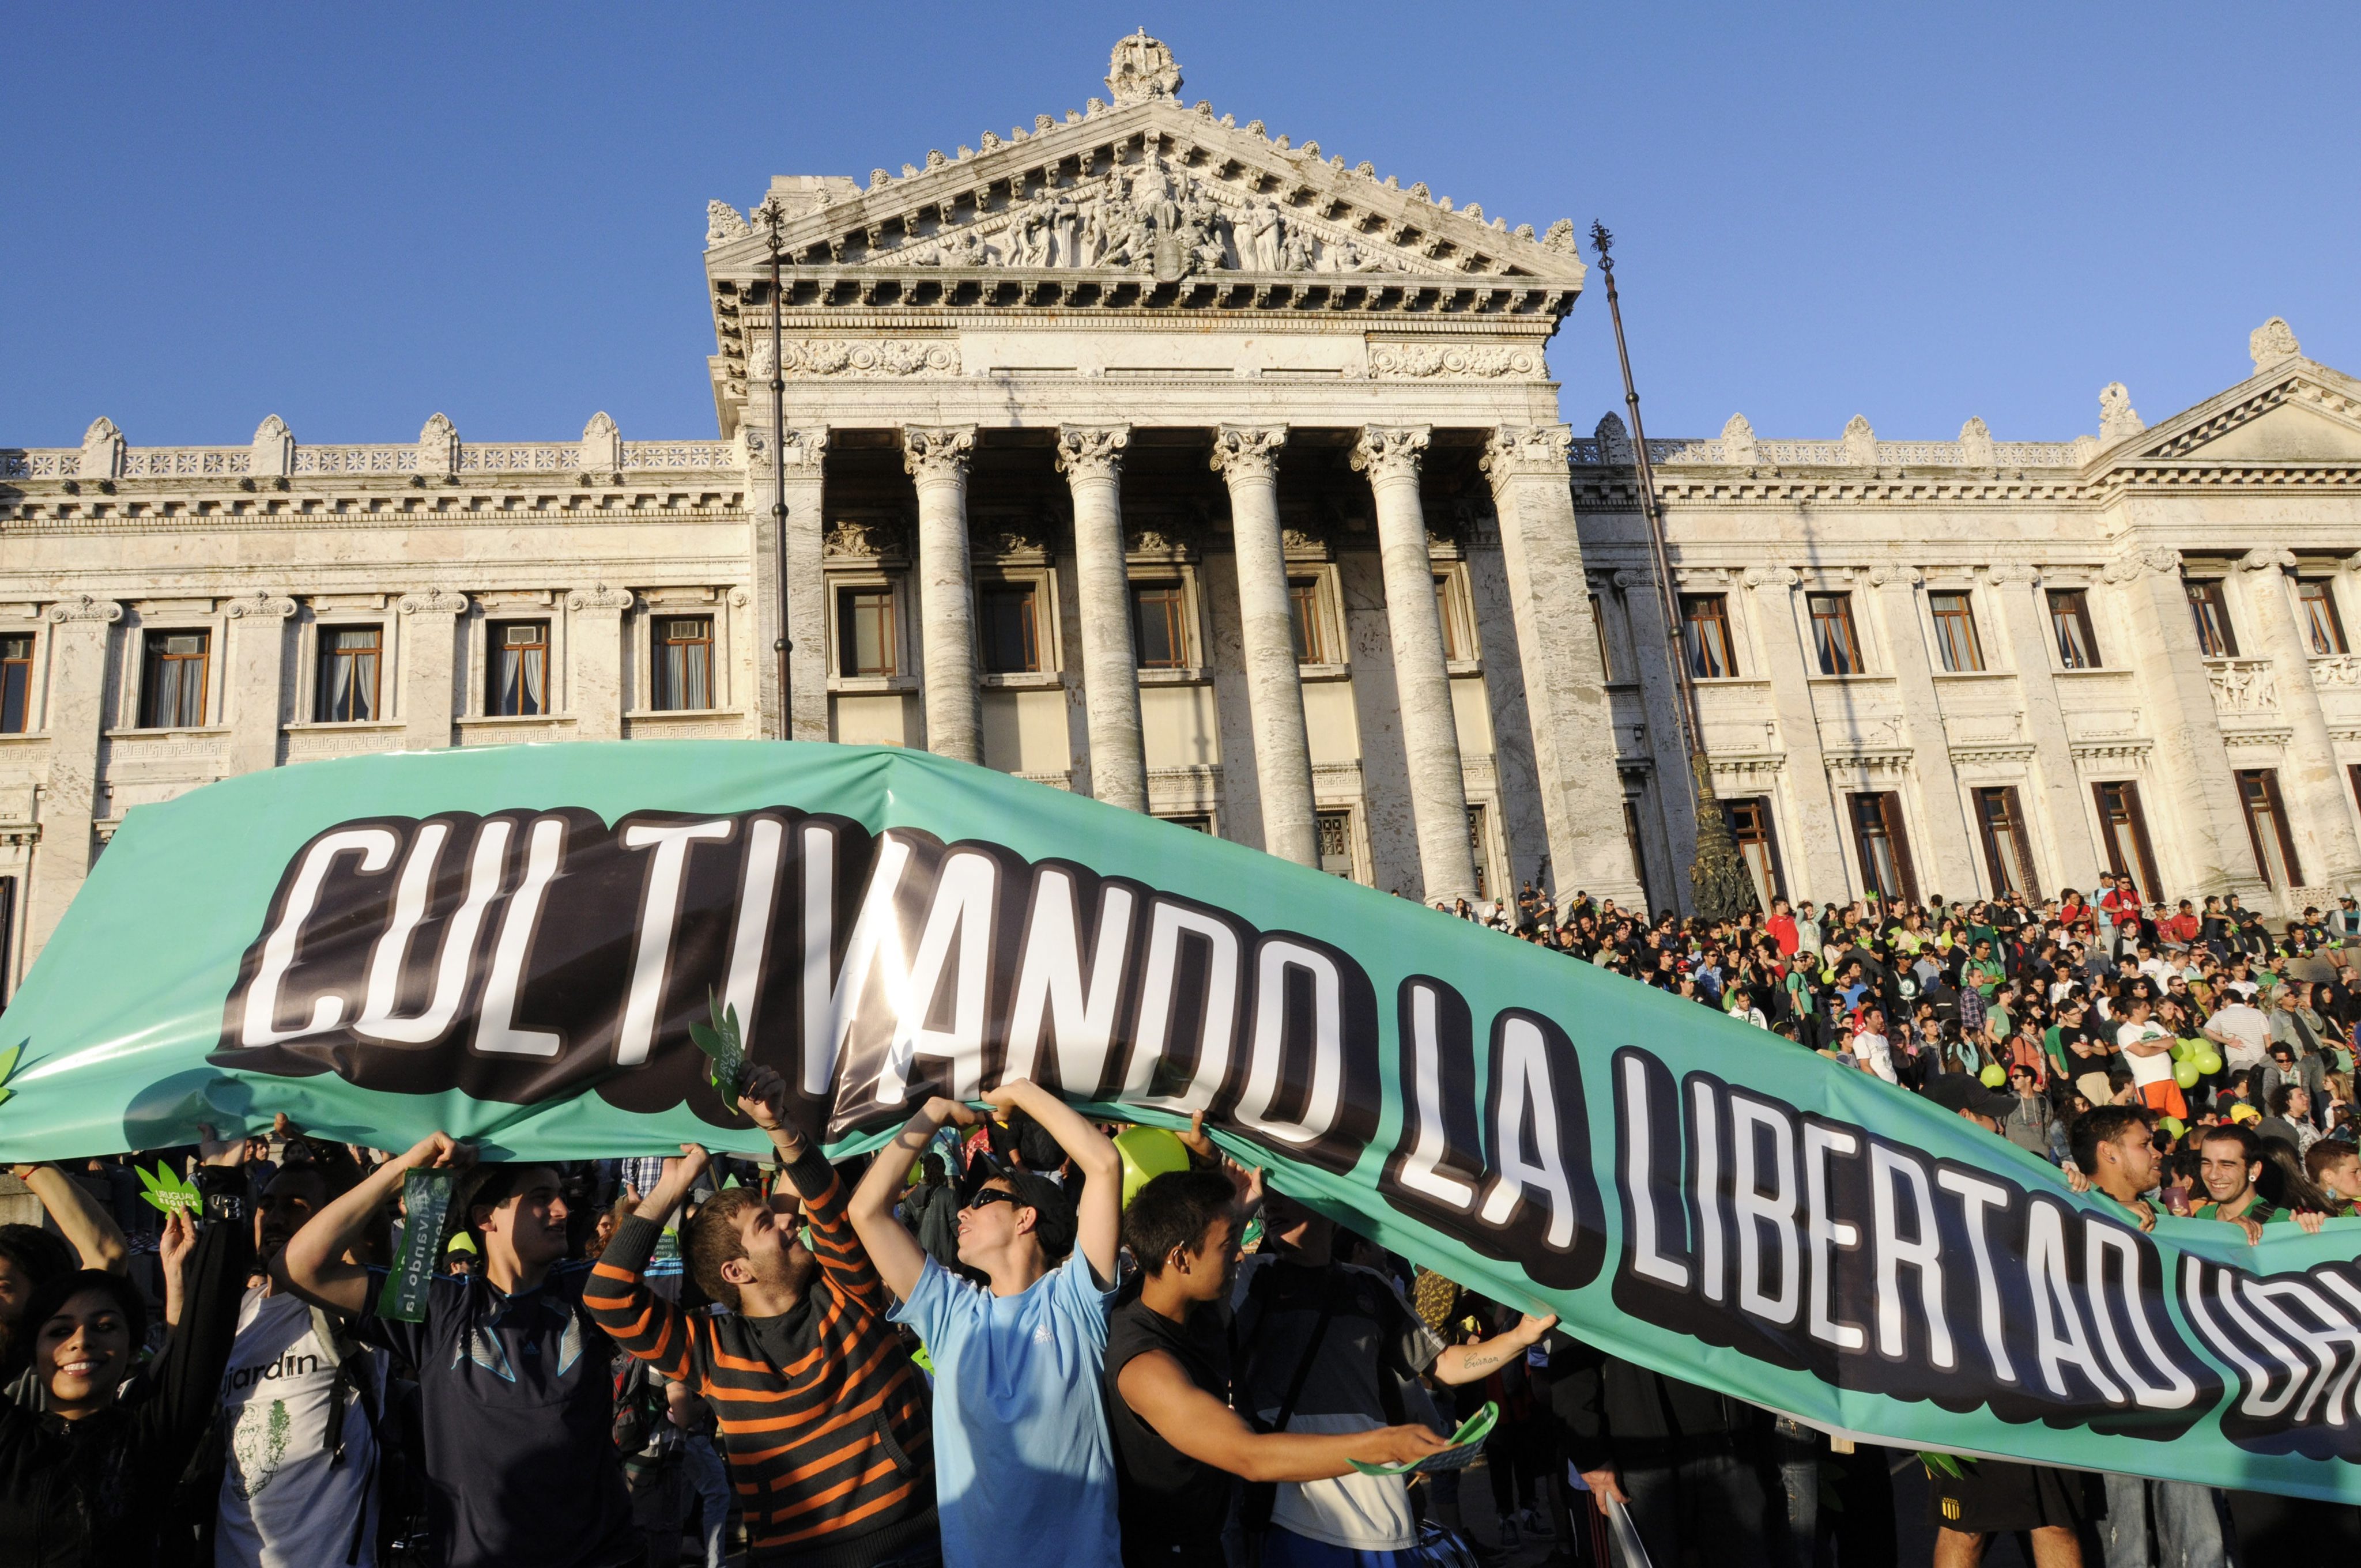 След 12-часови дебати проектозаконът на уругвайския кабинет получи подкрепа от 16 сенатори